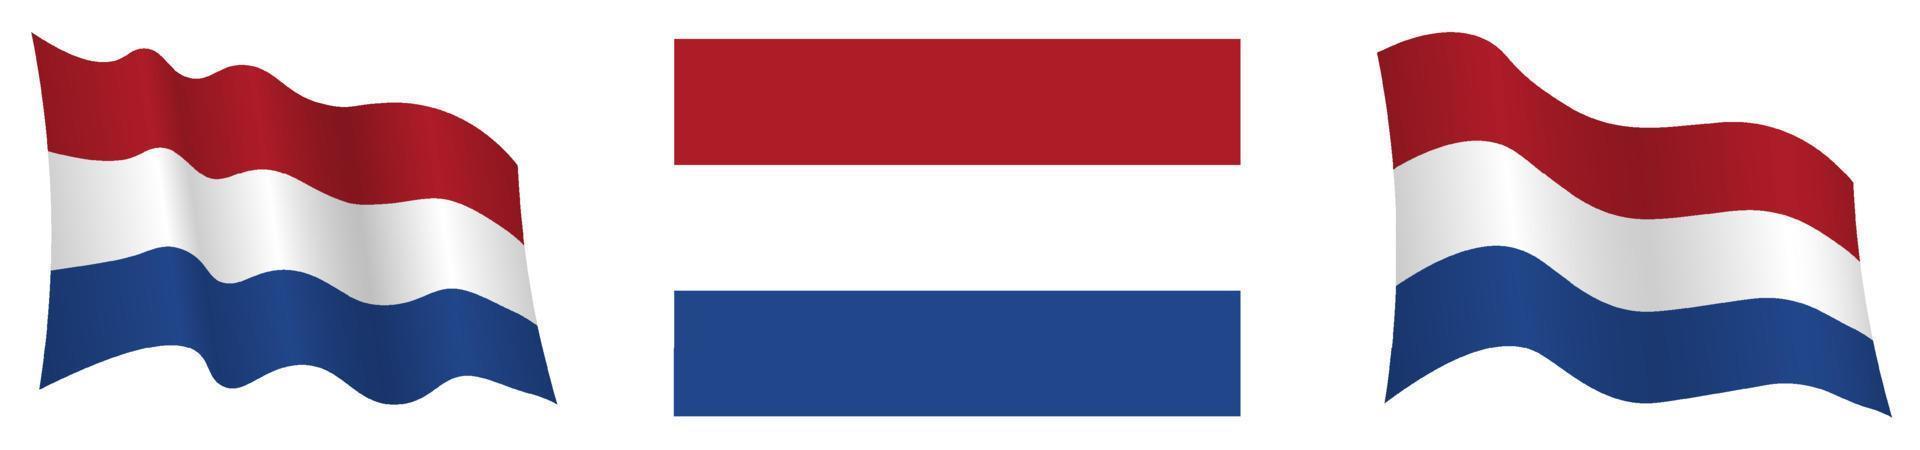 bandera de holanda, países bajos en posición estática y en movimiento, desarrollándose en el viento en colores y tamaños exactos, sobre fondo blanco vector